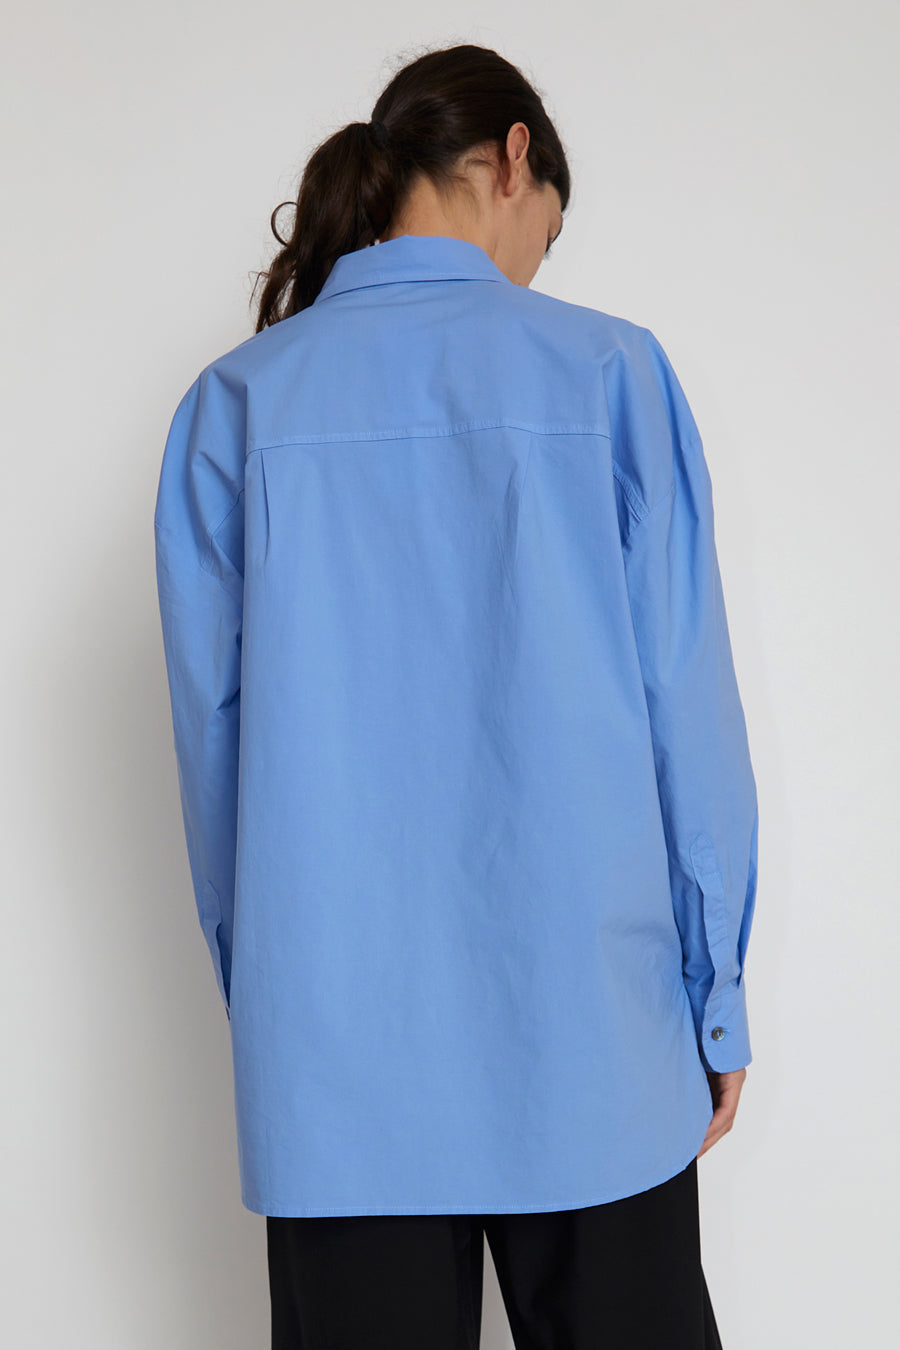 6397 Lori Shirt in Blue